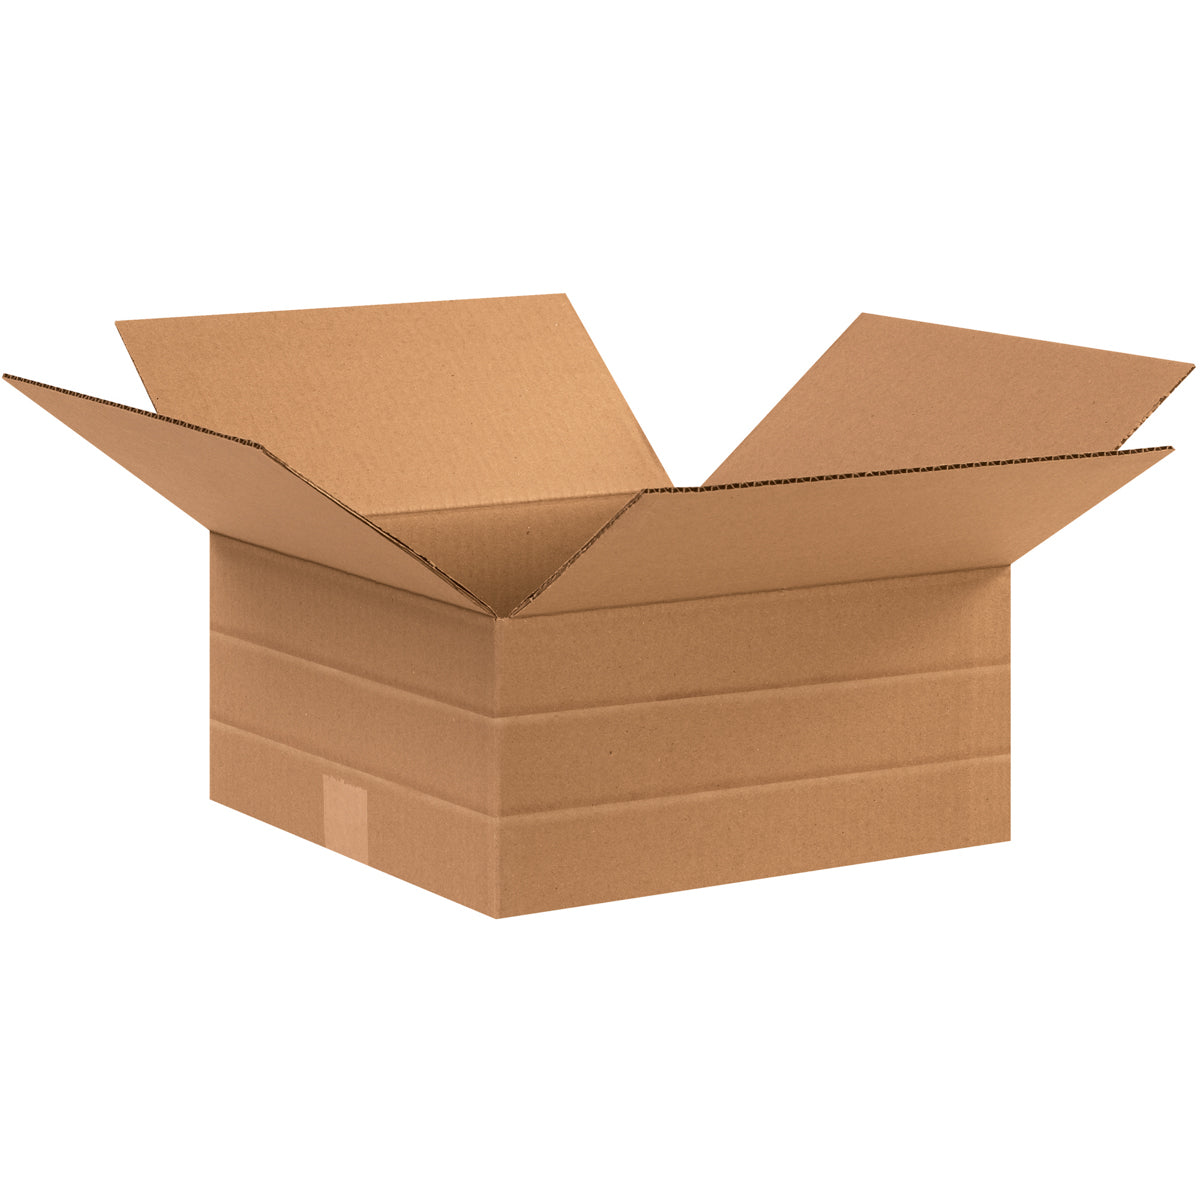 Package ship. Коробки. Картонная коробка. Коробка 20х20х10 см. Коробки 5 слойные картонные.